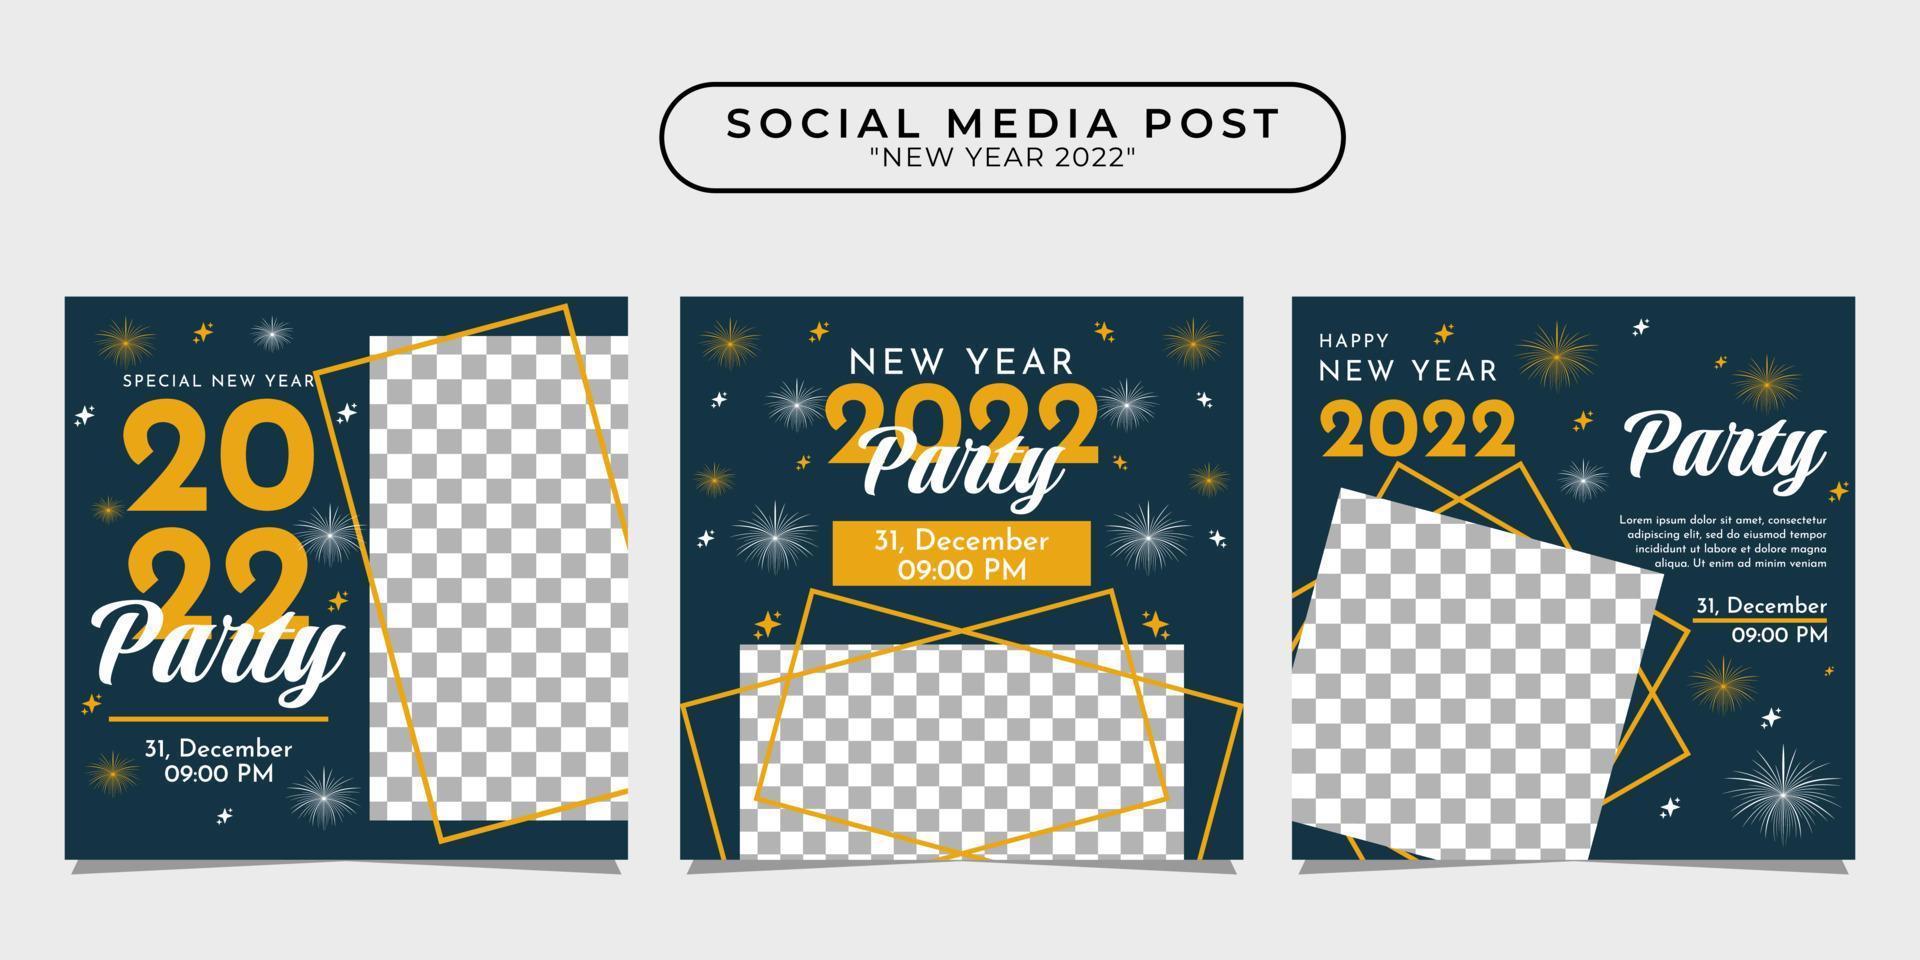 coleção de designs de modelo de postagem de mídia social para convites de festa de ano novo para banners, pôsteres, publicidade, etc. vetor